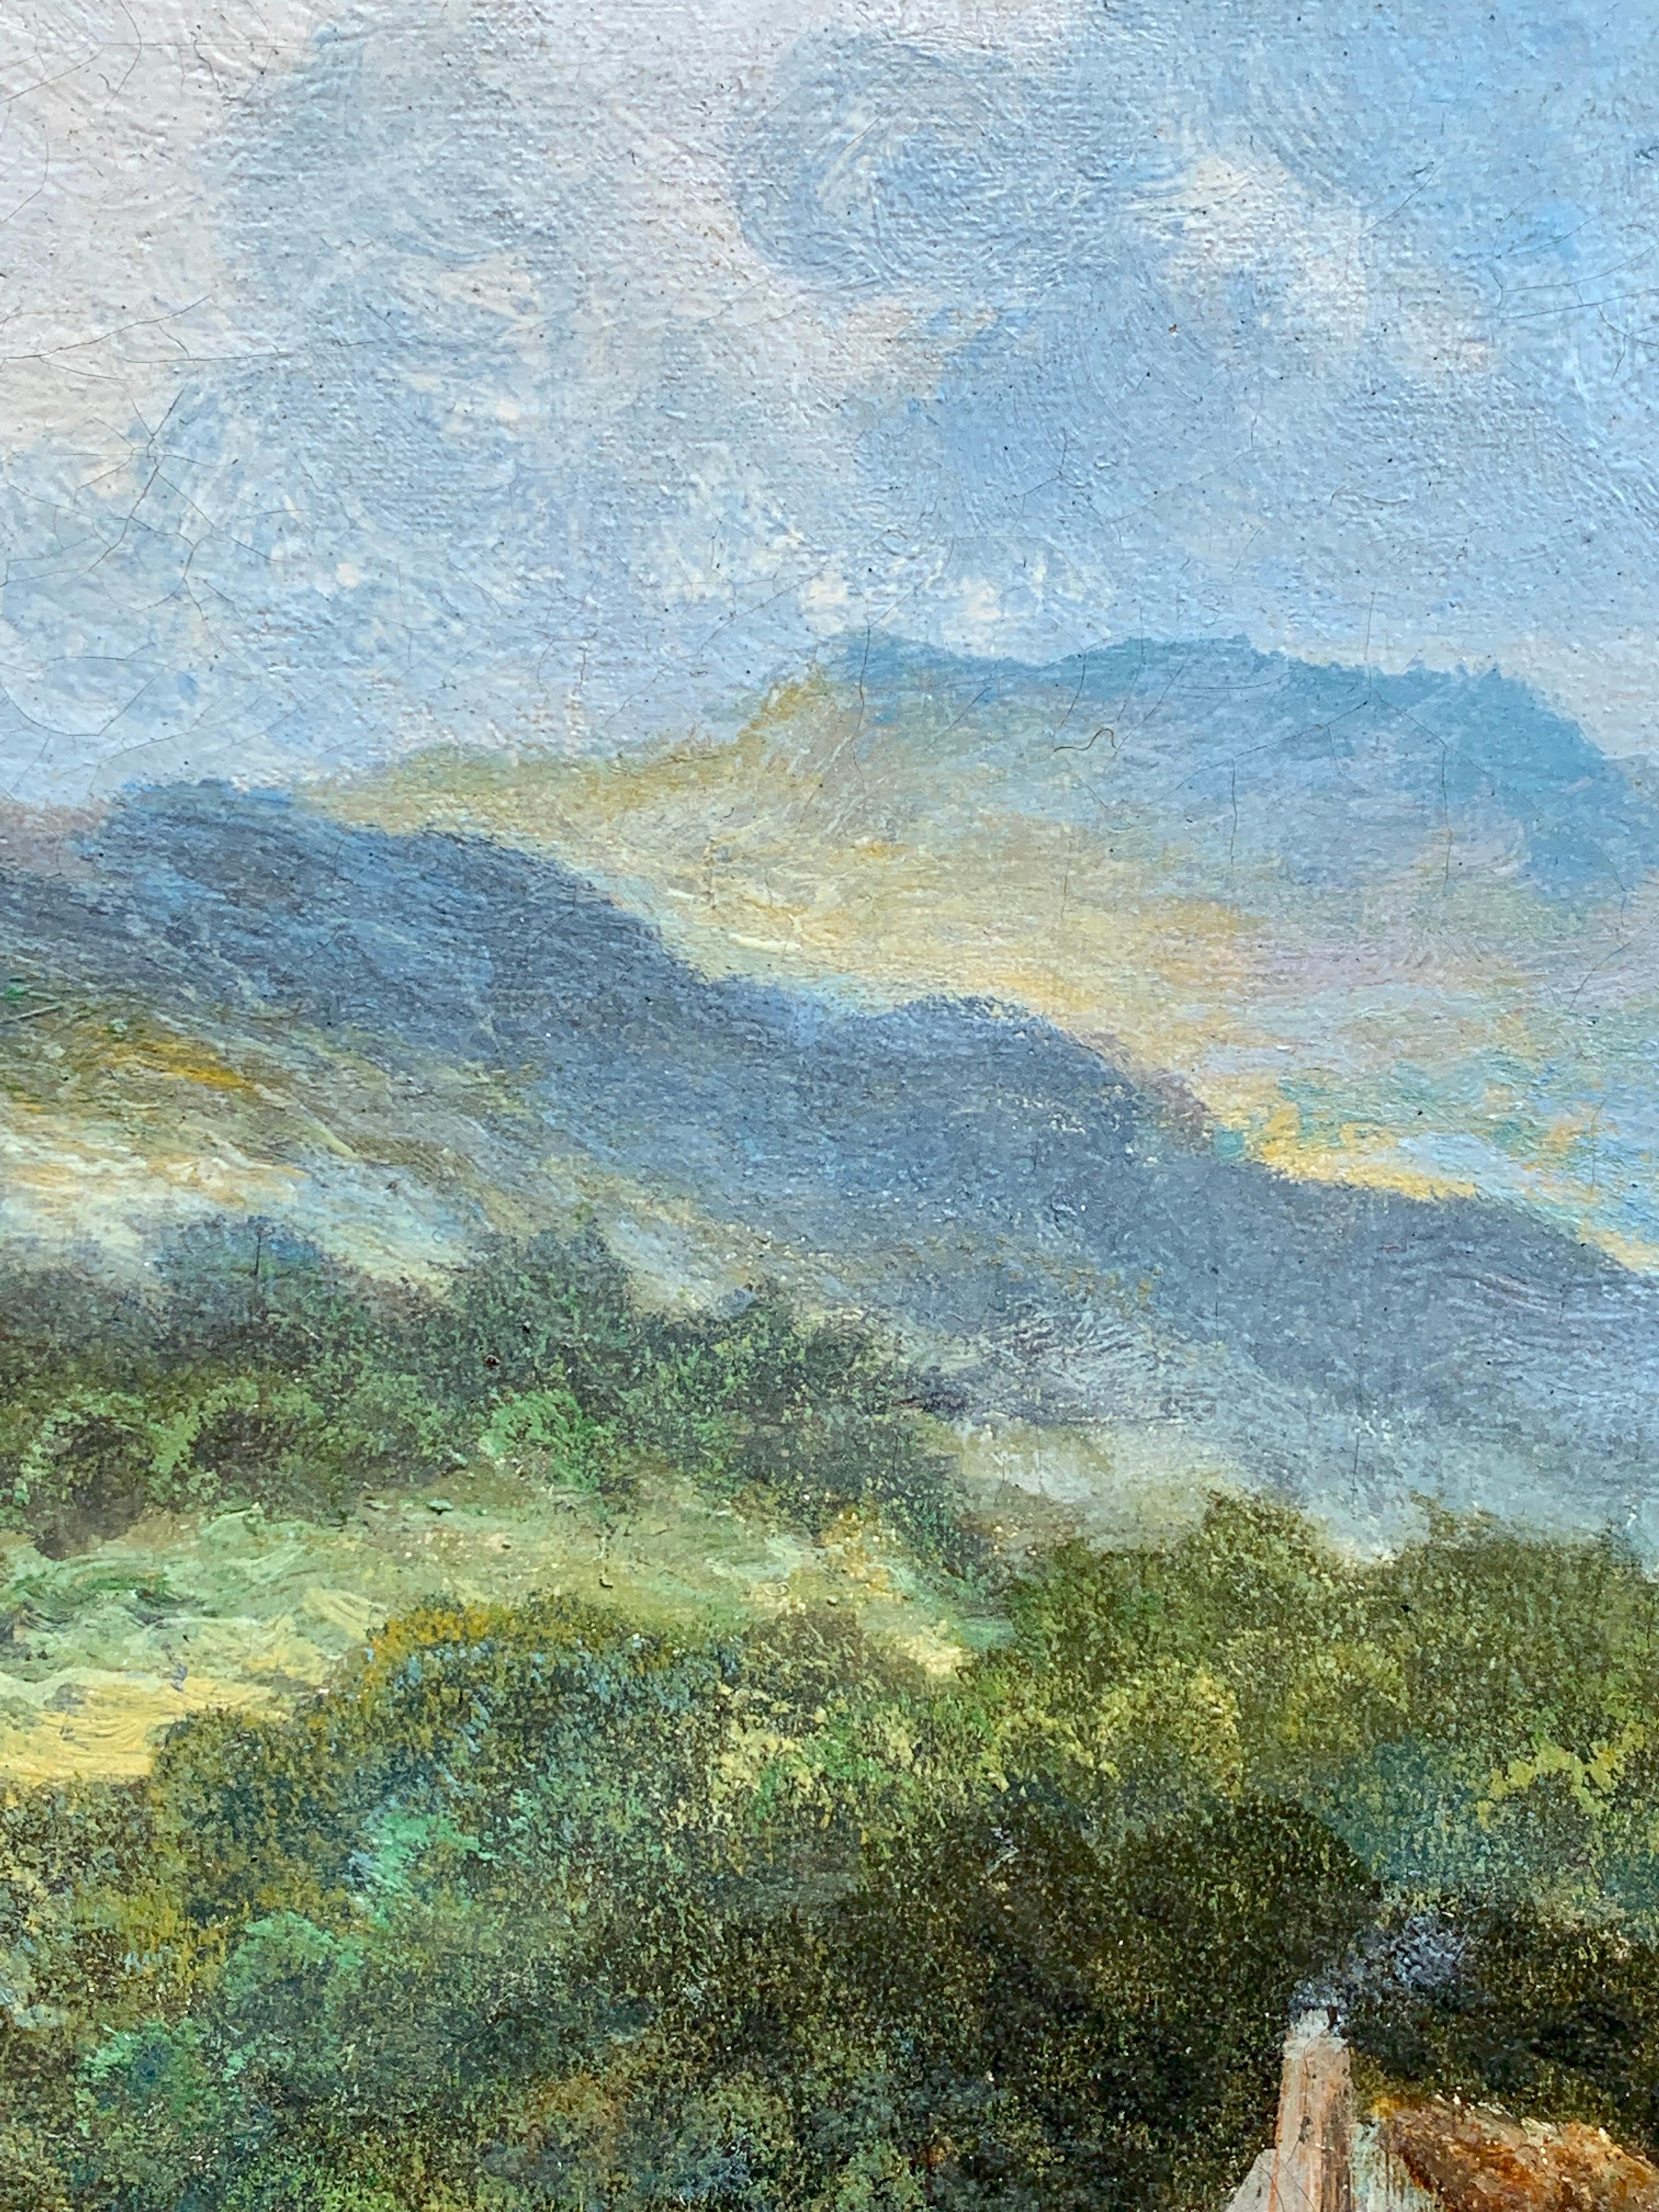 Schottische Hochland-Schlosslandschaft des späten 19. Jahrhunderts, mit Rindertränke

E. Mulready war mit ziemlicher Sicherheit ein Pseudonym für William Langley, einen bekannten englischen Landschaftsmaler aus den 1890er bis 1920er Jahren.

Dieses